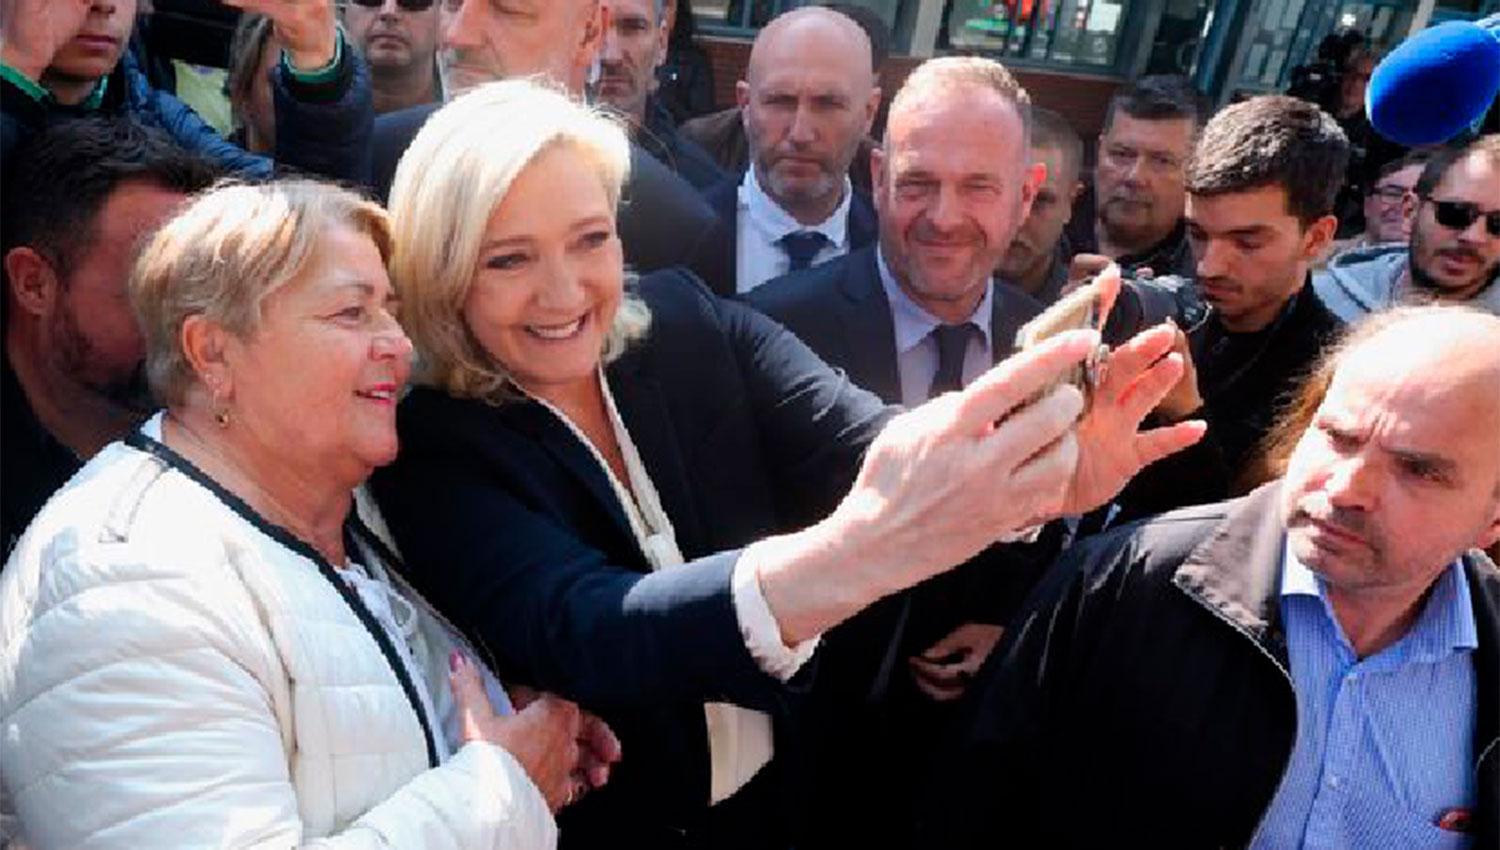 UNA SELFIE. Le Pen se tomó fotos con sus seguidores, en una postura similar a otros líderes populistas de derecha.